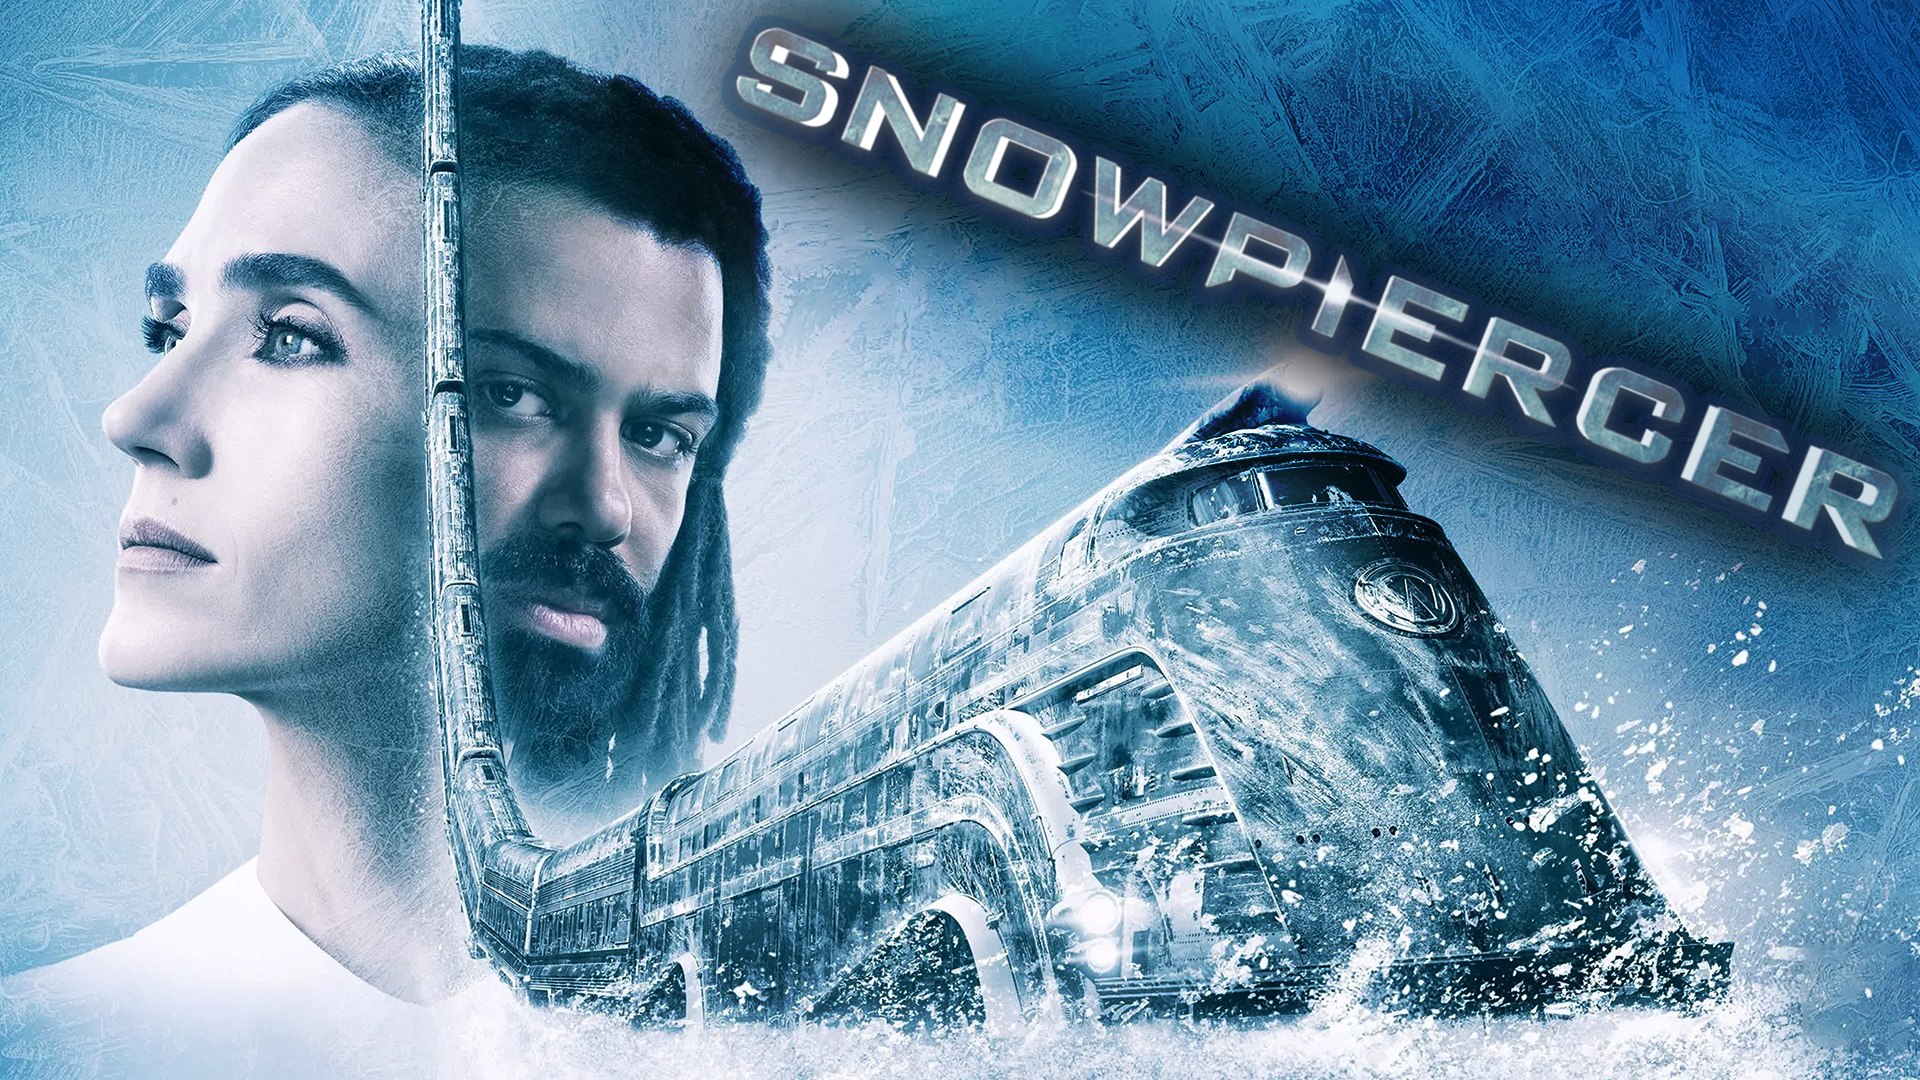 Сквозь снег – 2 сезон 8 серия / Snowpiercer